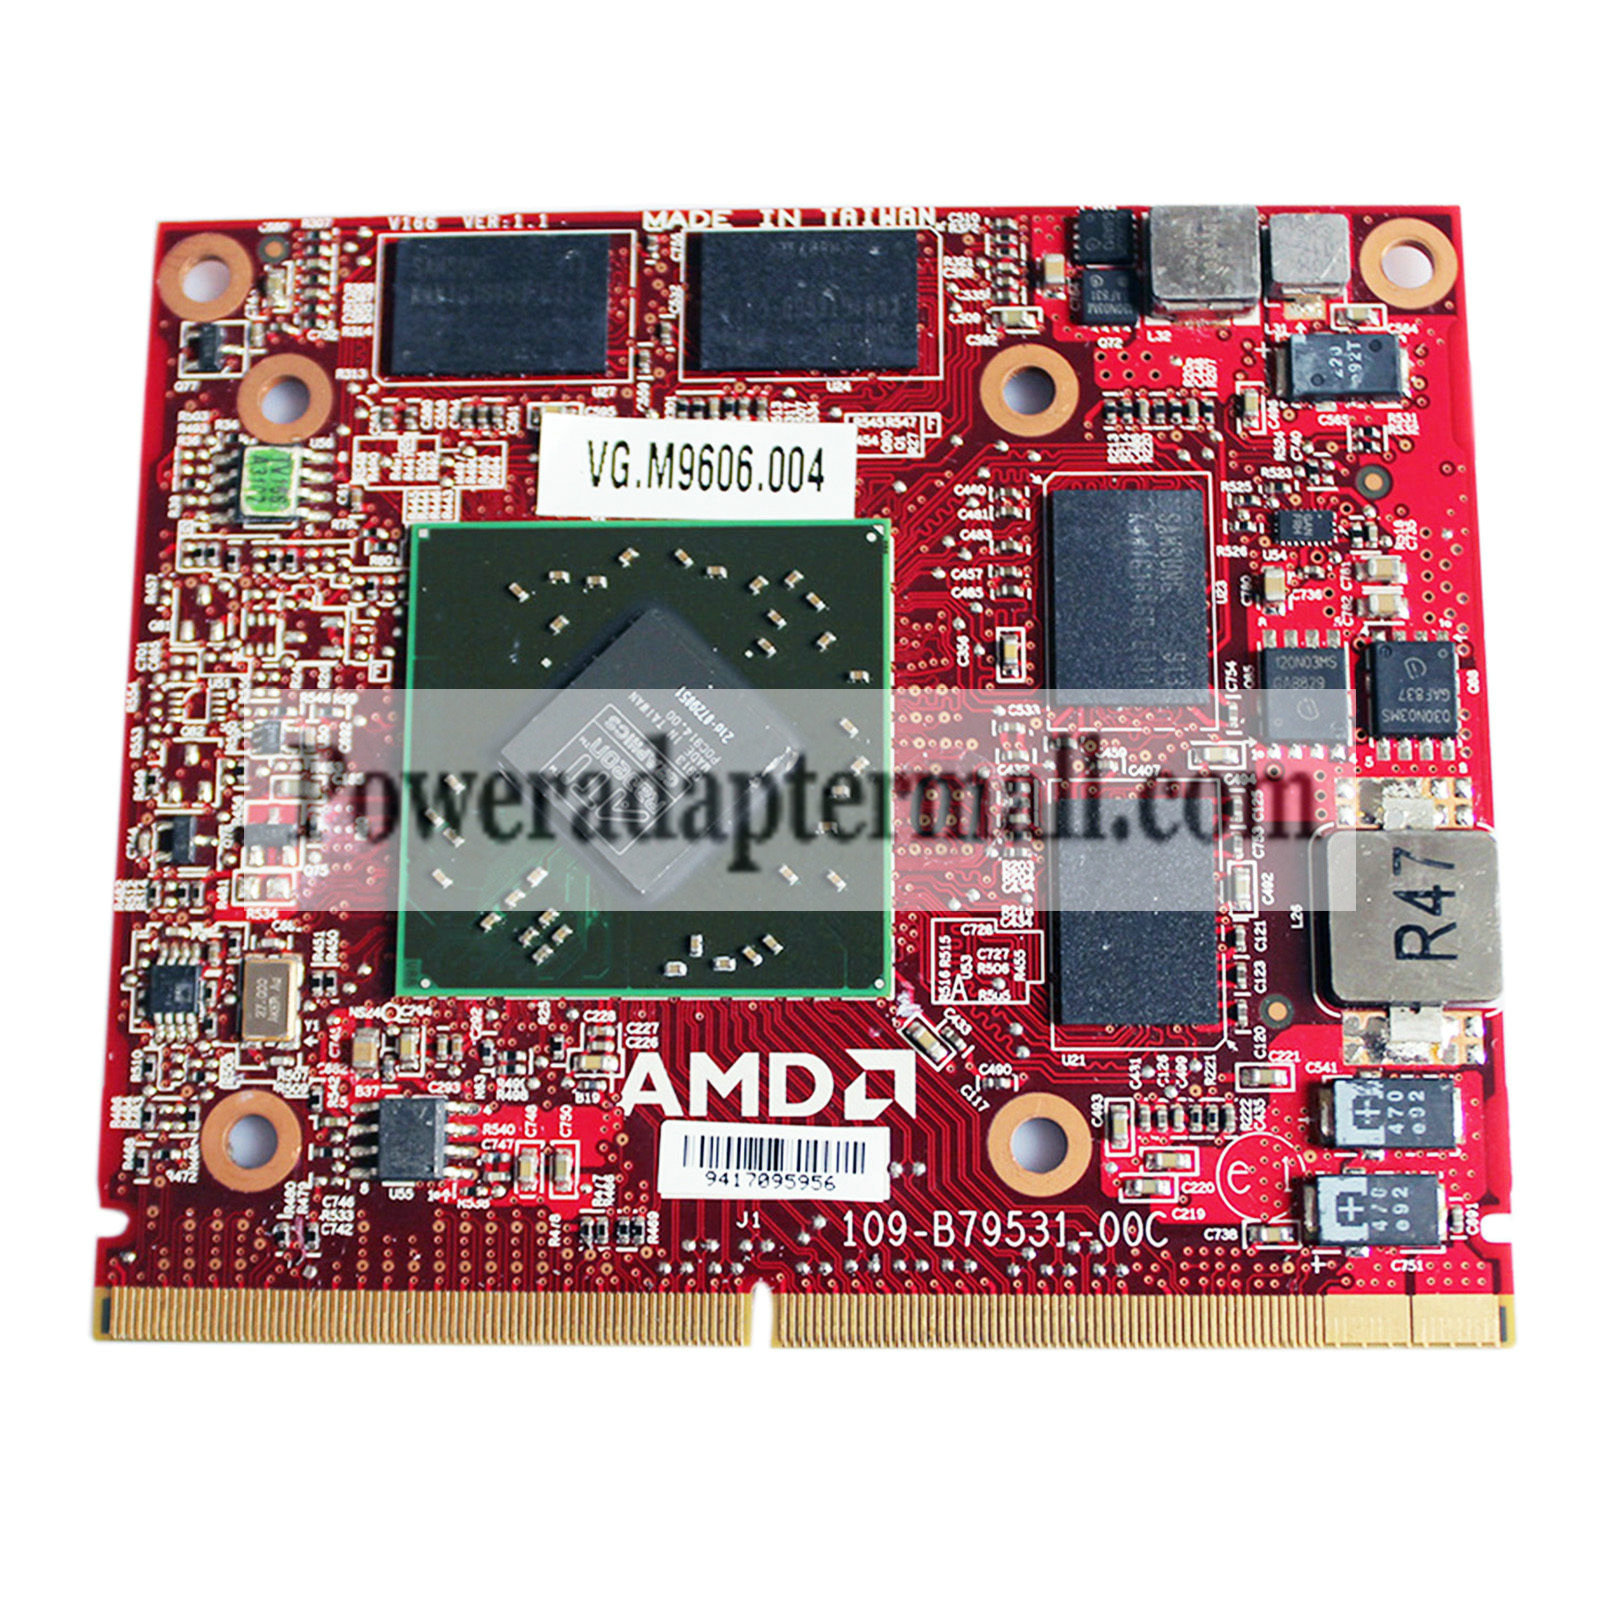 ATI HD4670 VG.M9606.004 DDR3 1GB MXM M96-XT A Video VGA card